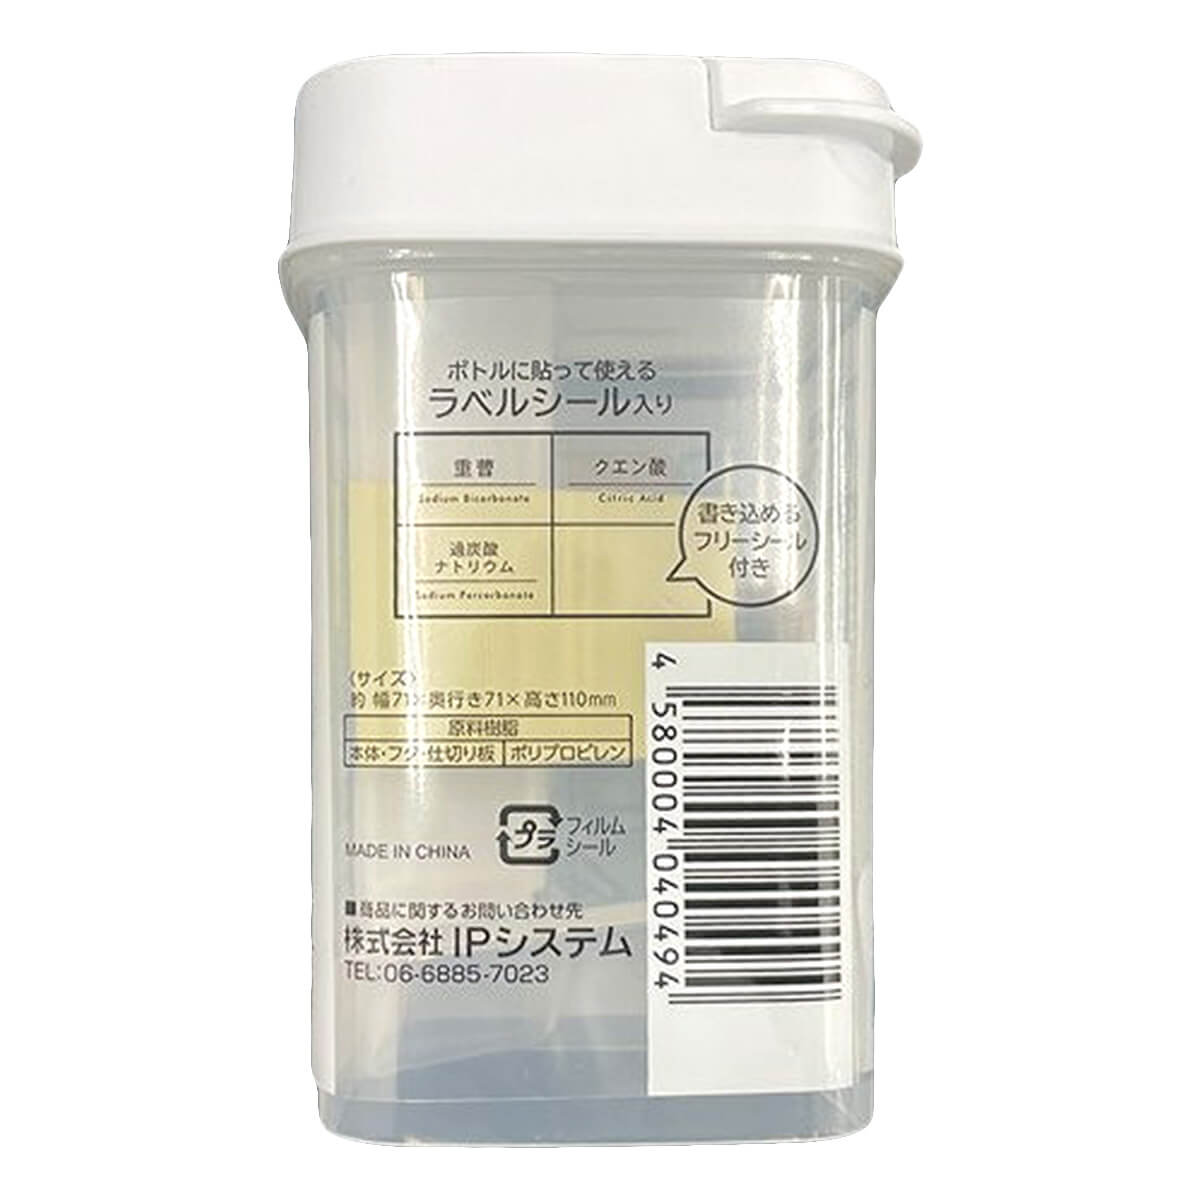 詰め替え容器 ひと振り計量粉末洗剤ボトル 230ml　333996